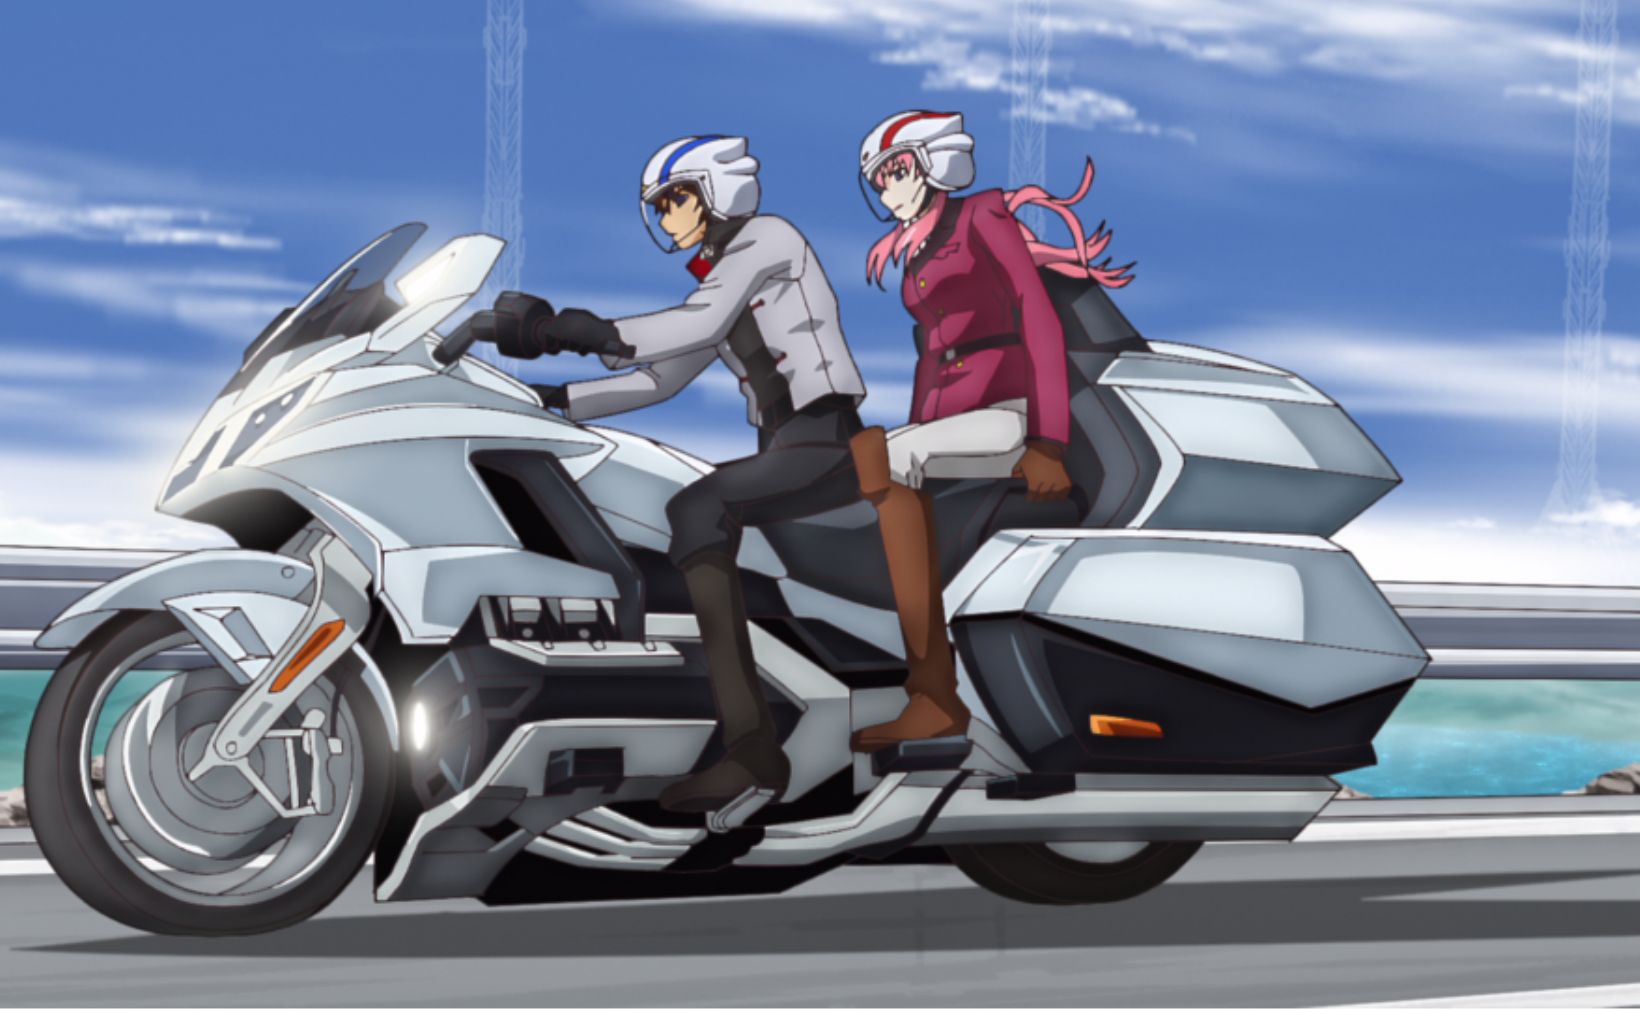 キラとラクスがバイクに乗るシーンではヘルメットやウエアも新規に設定され、描き下ろされた